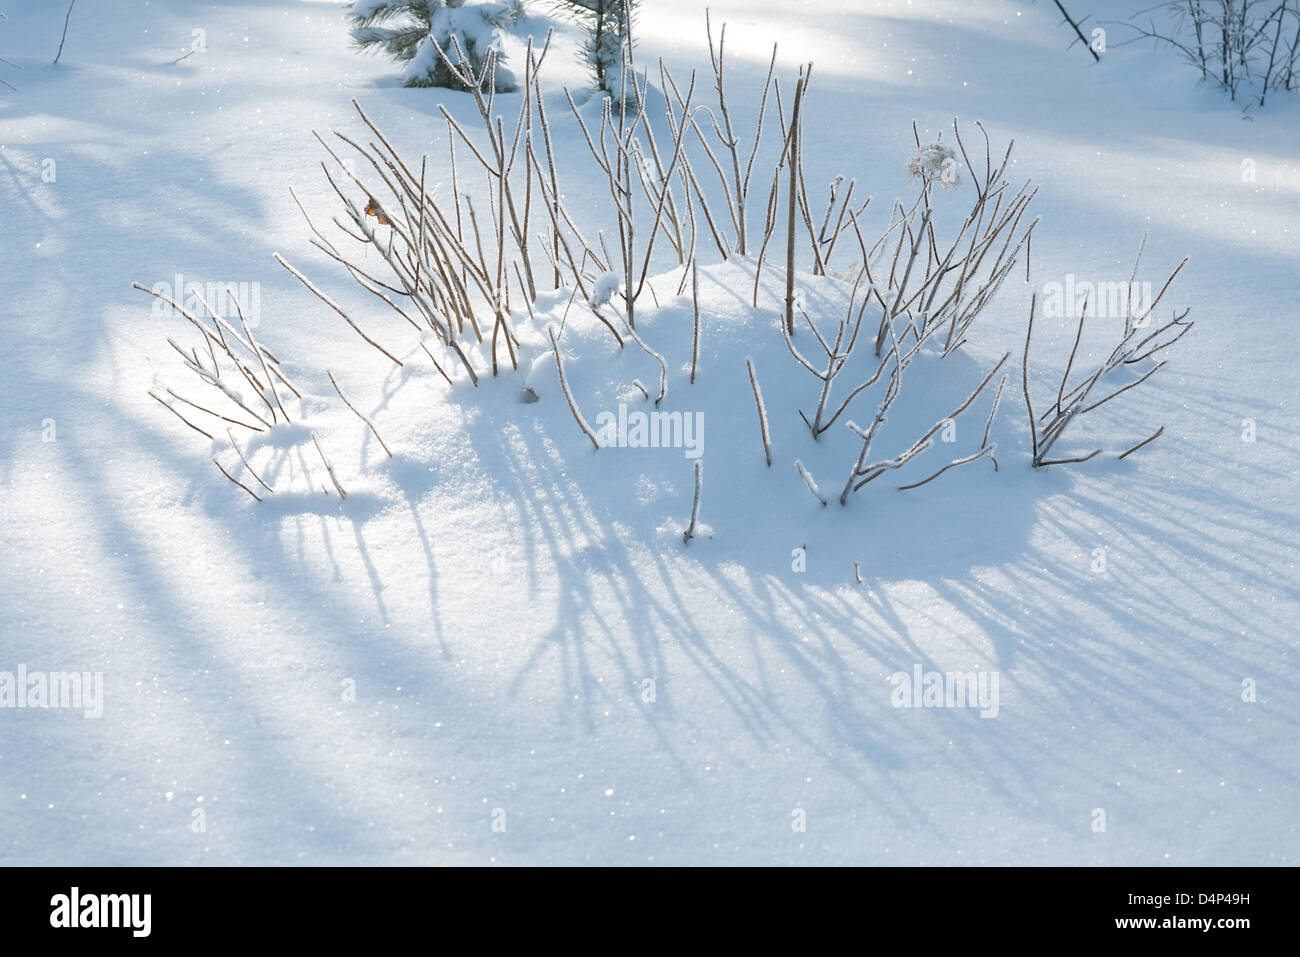 Drôle de hérisson snowdrift et brindilles bush Banque D'Images